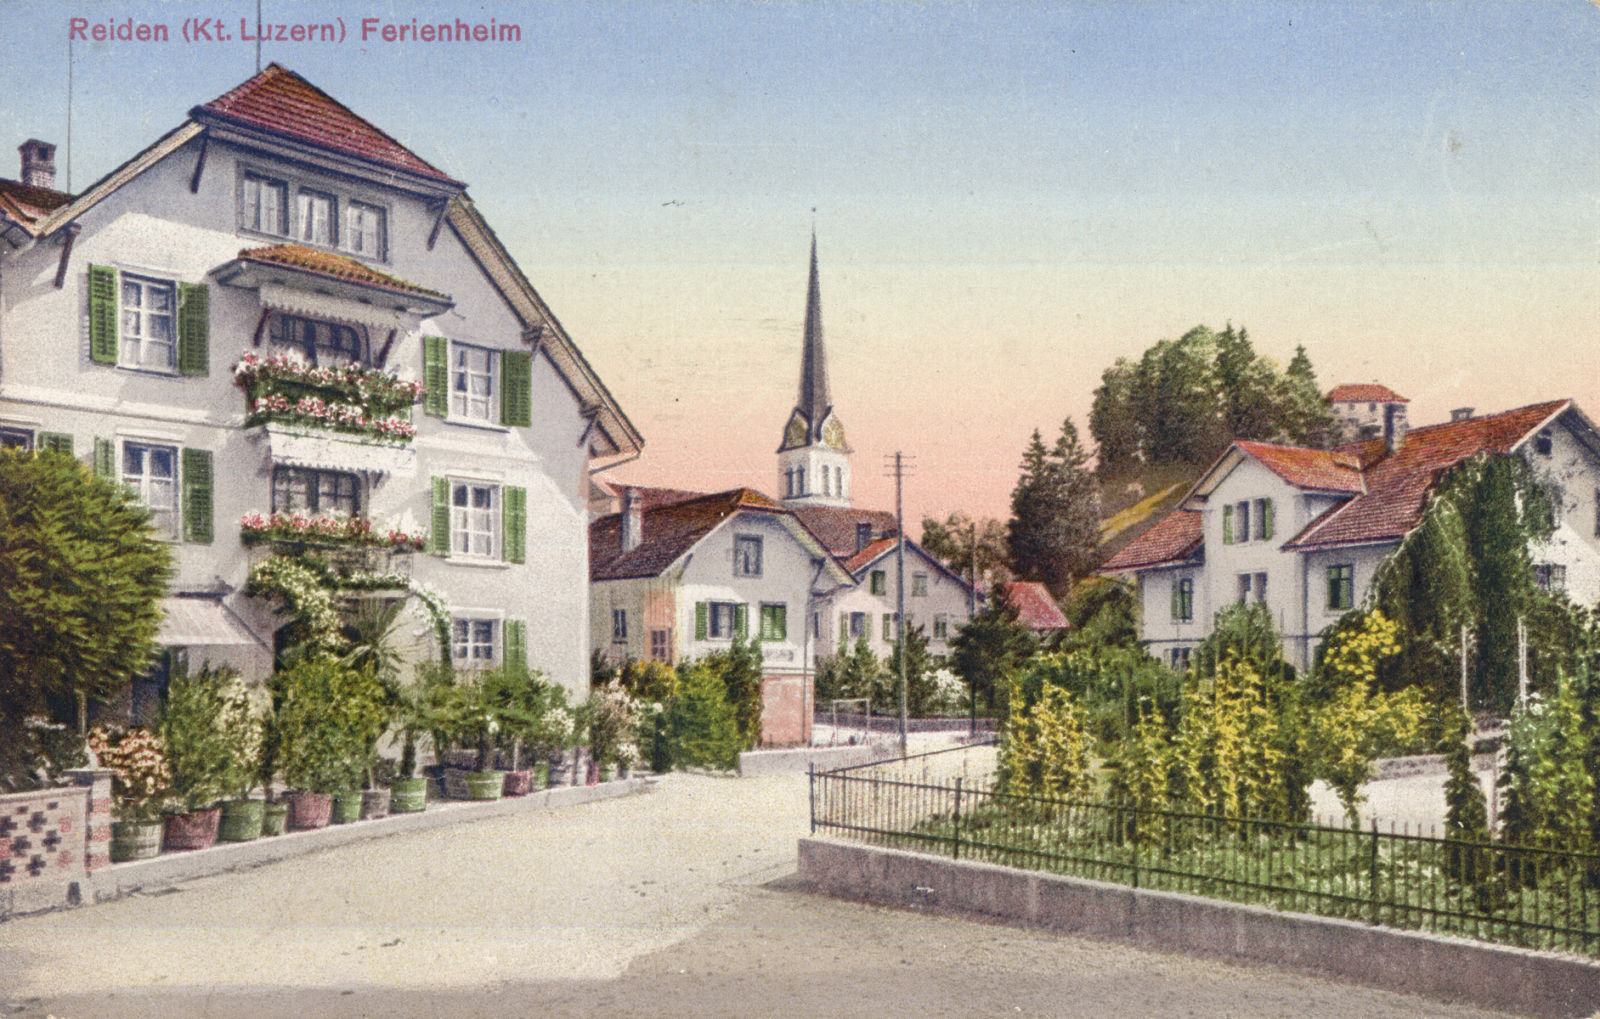 Ferienheim Gut-Oetterli 1915 